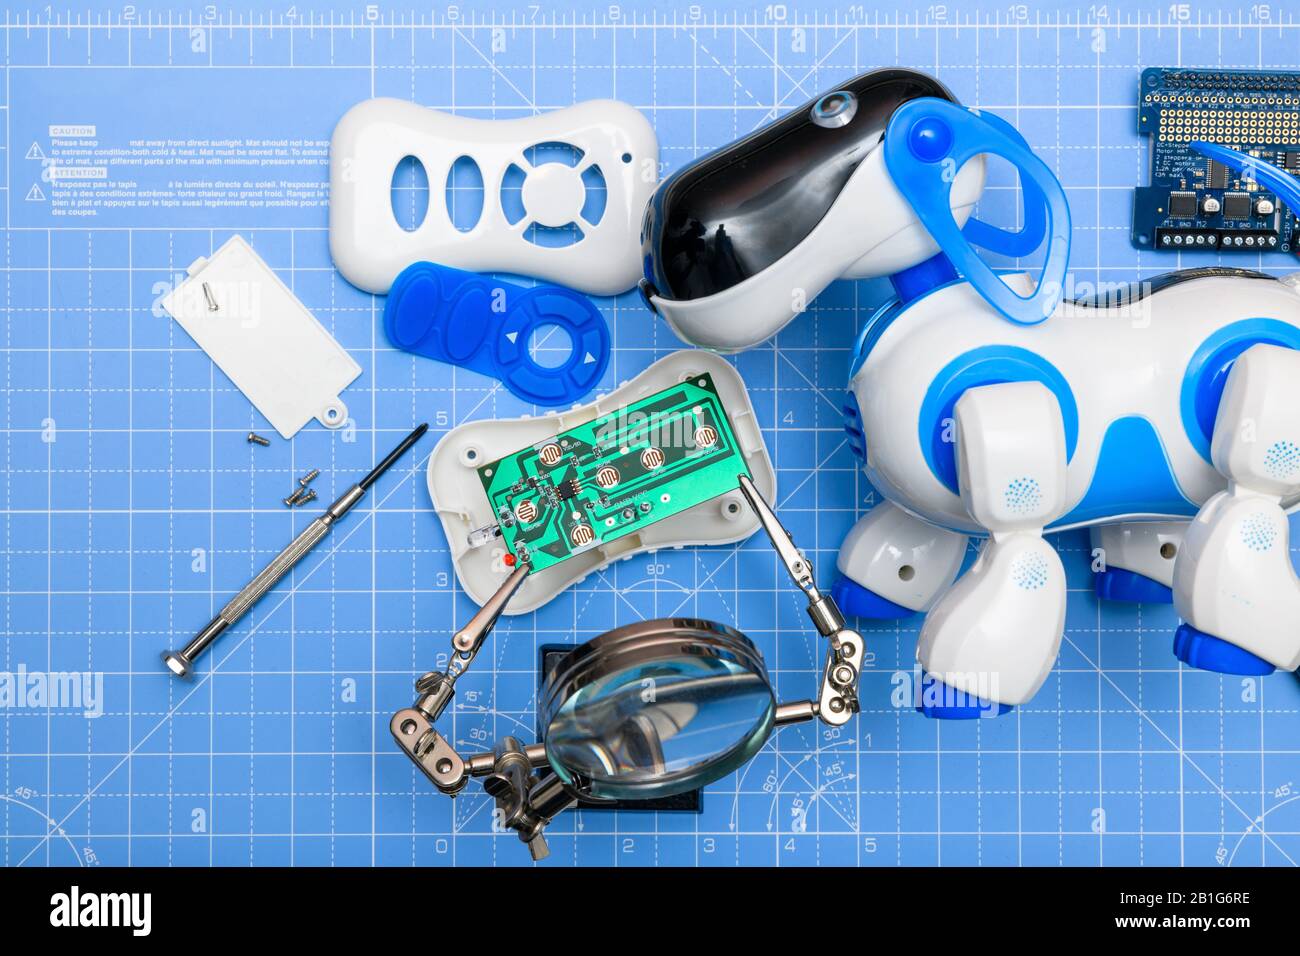 Toy Roboterhund mit Leiterplatte wird montiert.Konzept von Spielzeug und Elektronik montiert, recycelt, repariert oder für die Ausbildung in Elektronik verwendet. Stockfoto